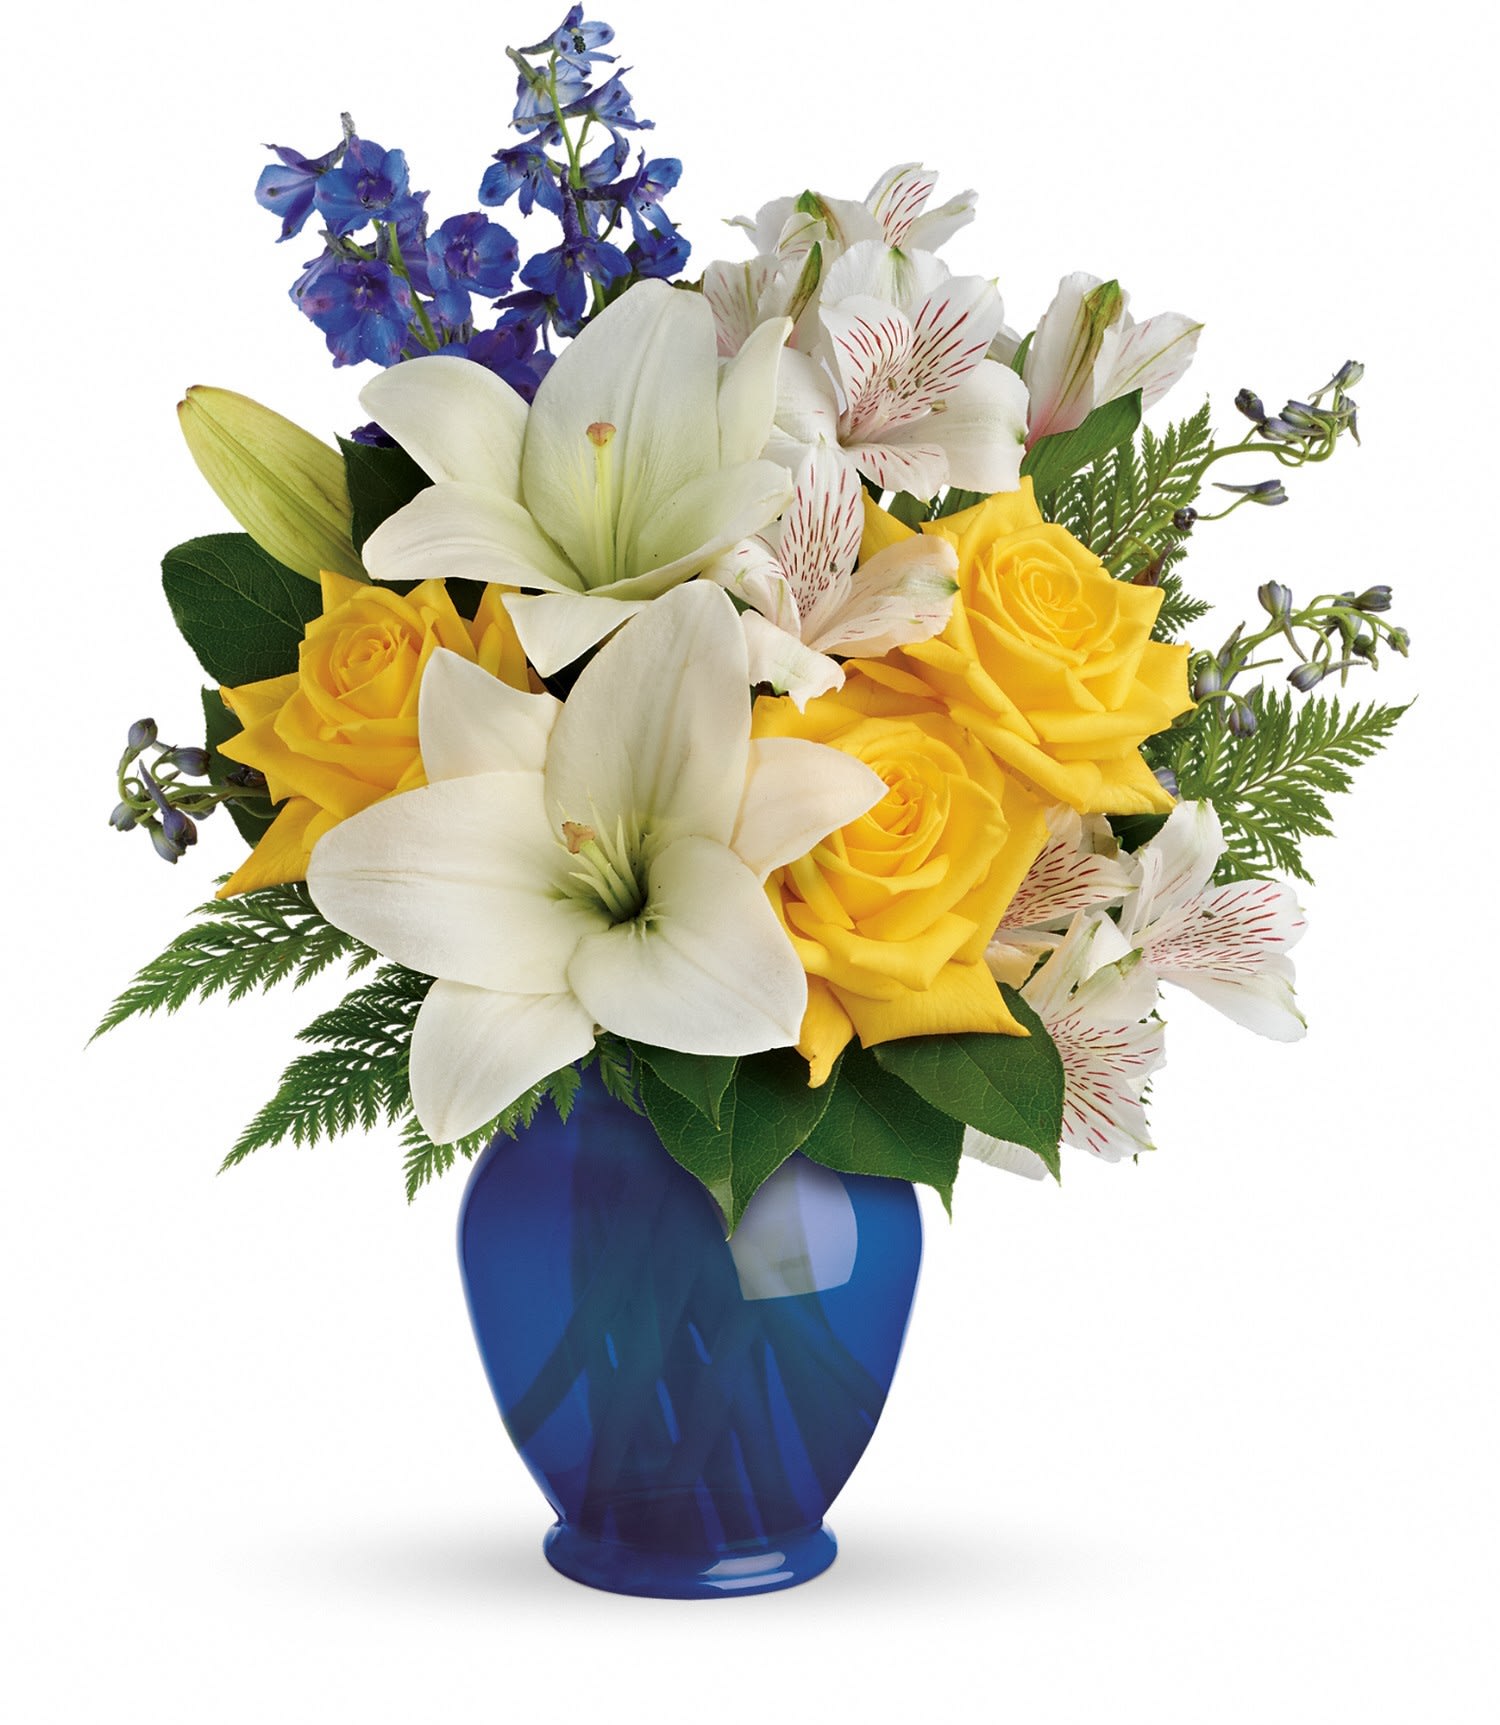 Roses, lilies, blue delphiniums. - Blue vase arrangement with summer flowers.